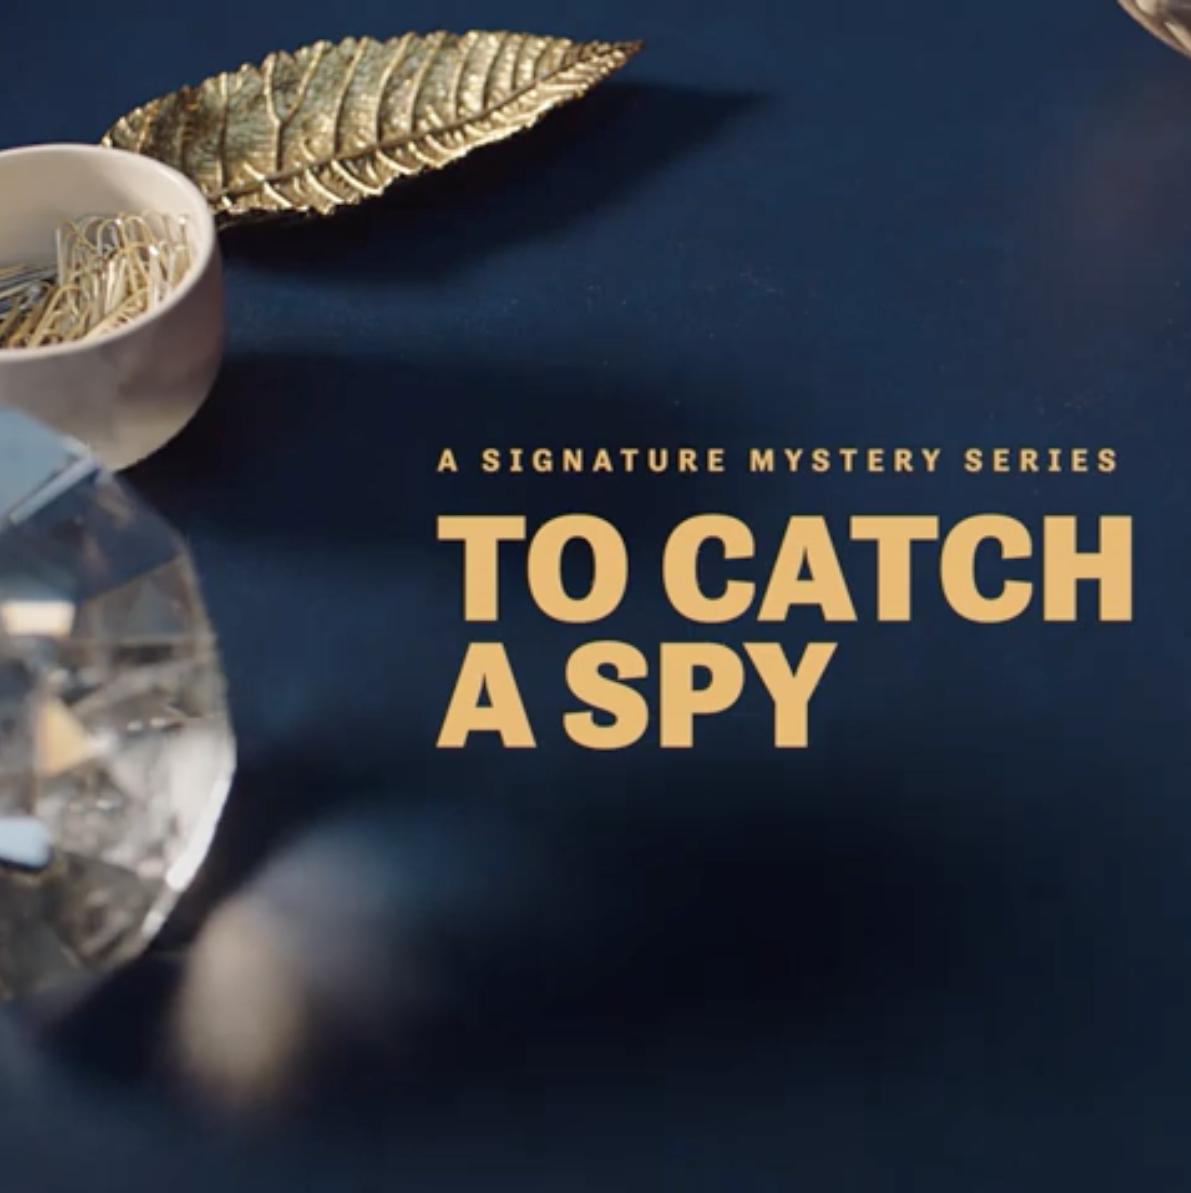 عکس فیلم گرفتن جاسوس To Catch a Spy 2021 HD با زیرنویس فارسی